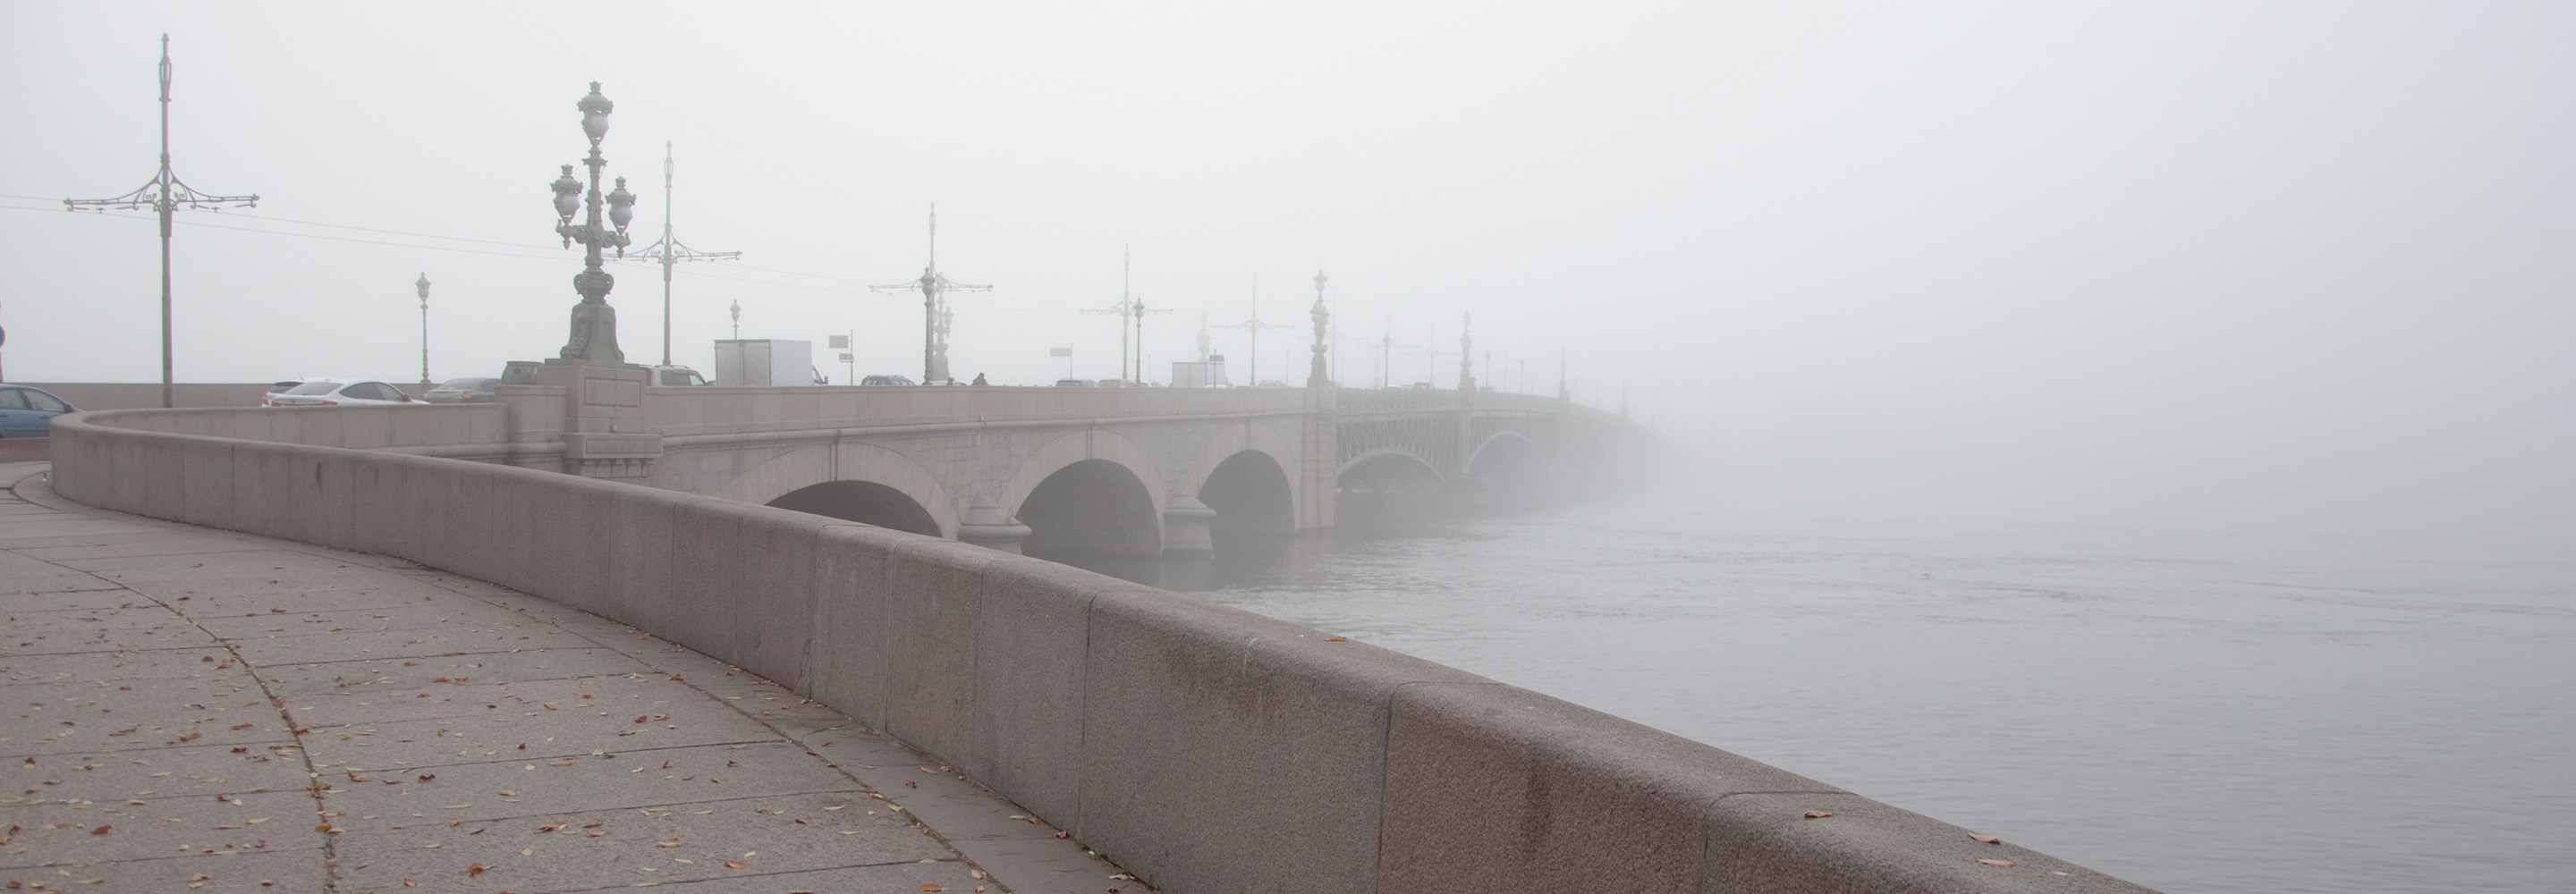 Грязь, курильщики и крысы: 11 причин не любить Петербург